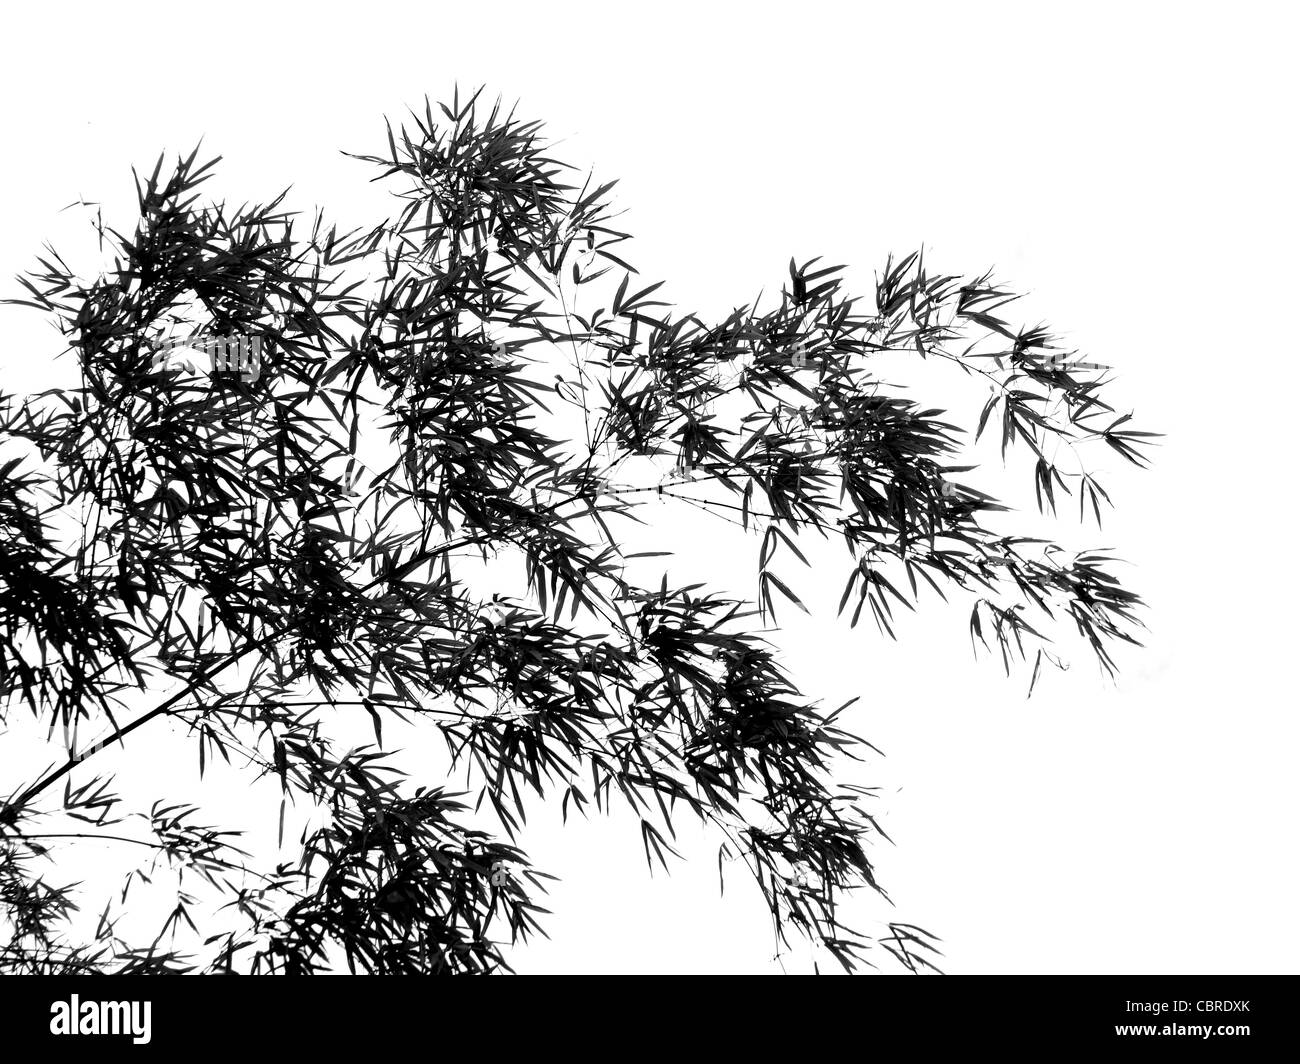 Contours image d'un arbre et des branches de bambou qui ressemble à une peinture à l'encre de chine Banque D'Images